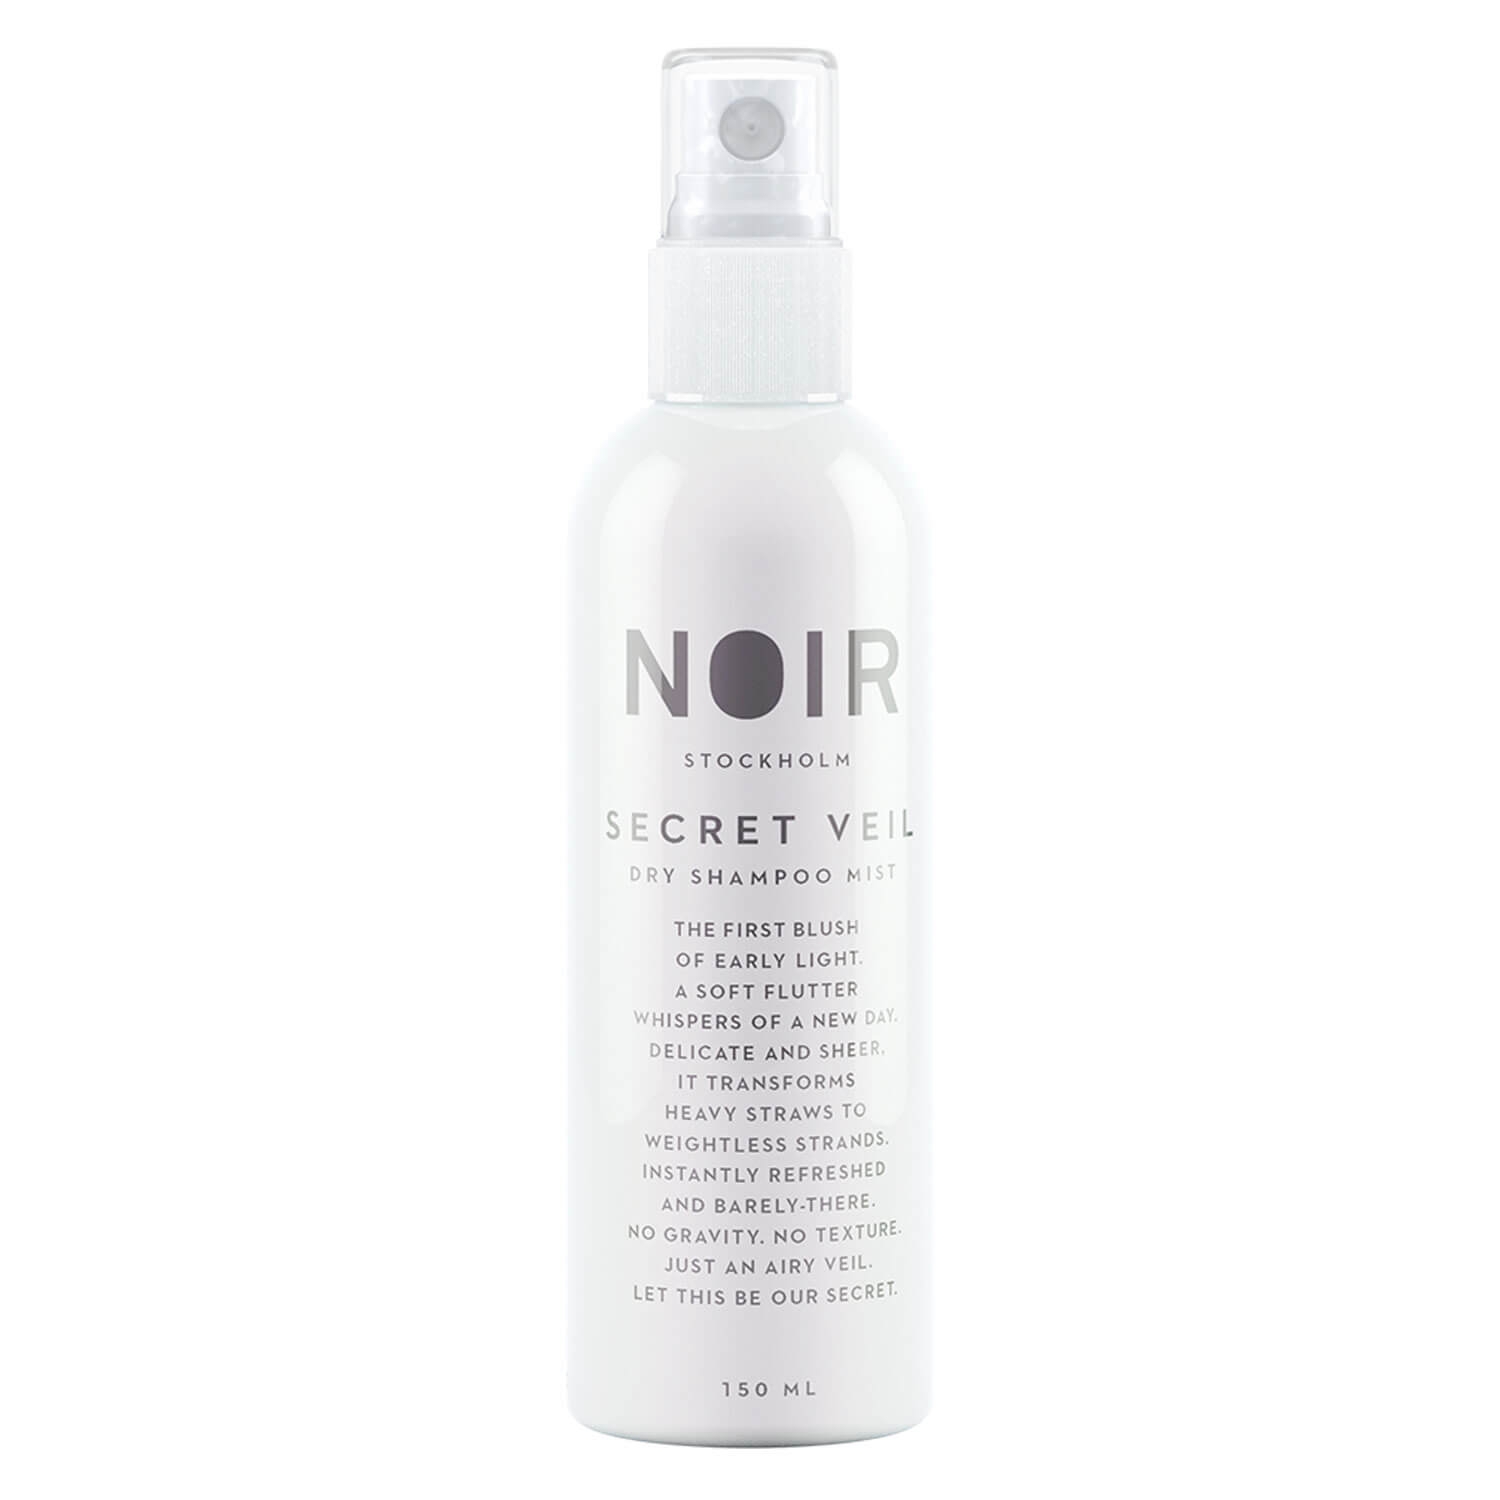 Produktbild von NOIR - Secret Veil Dry Shampoo Mist